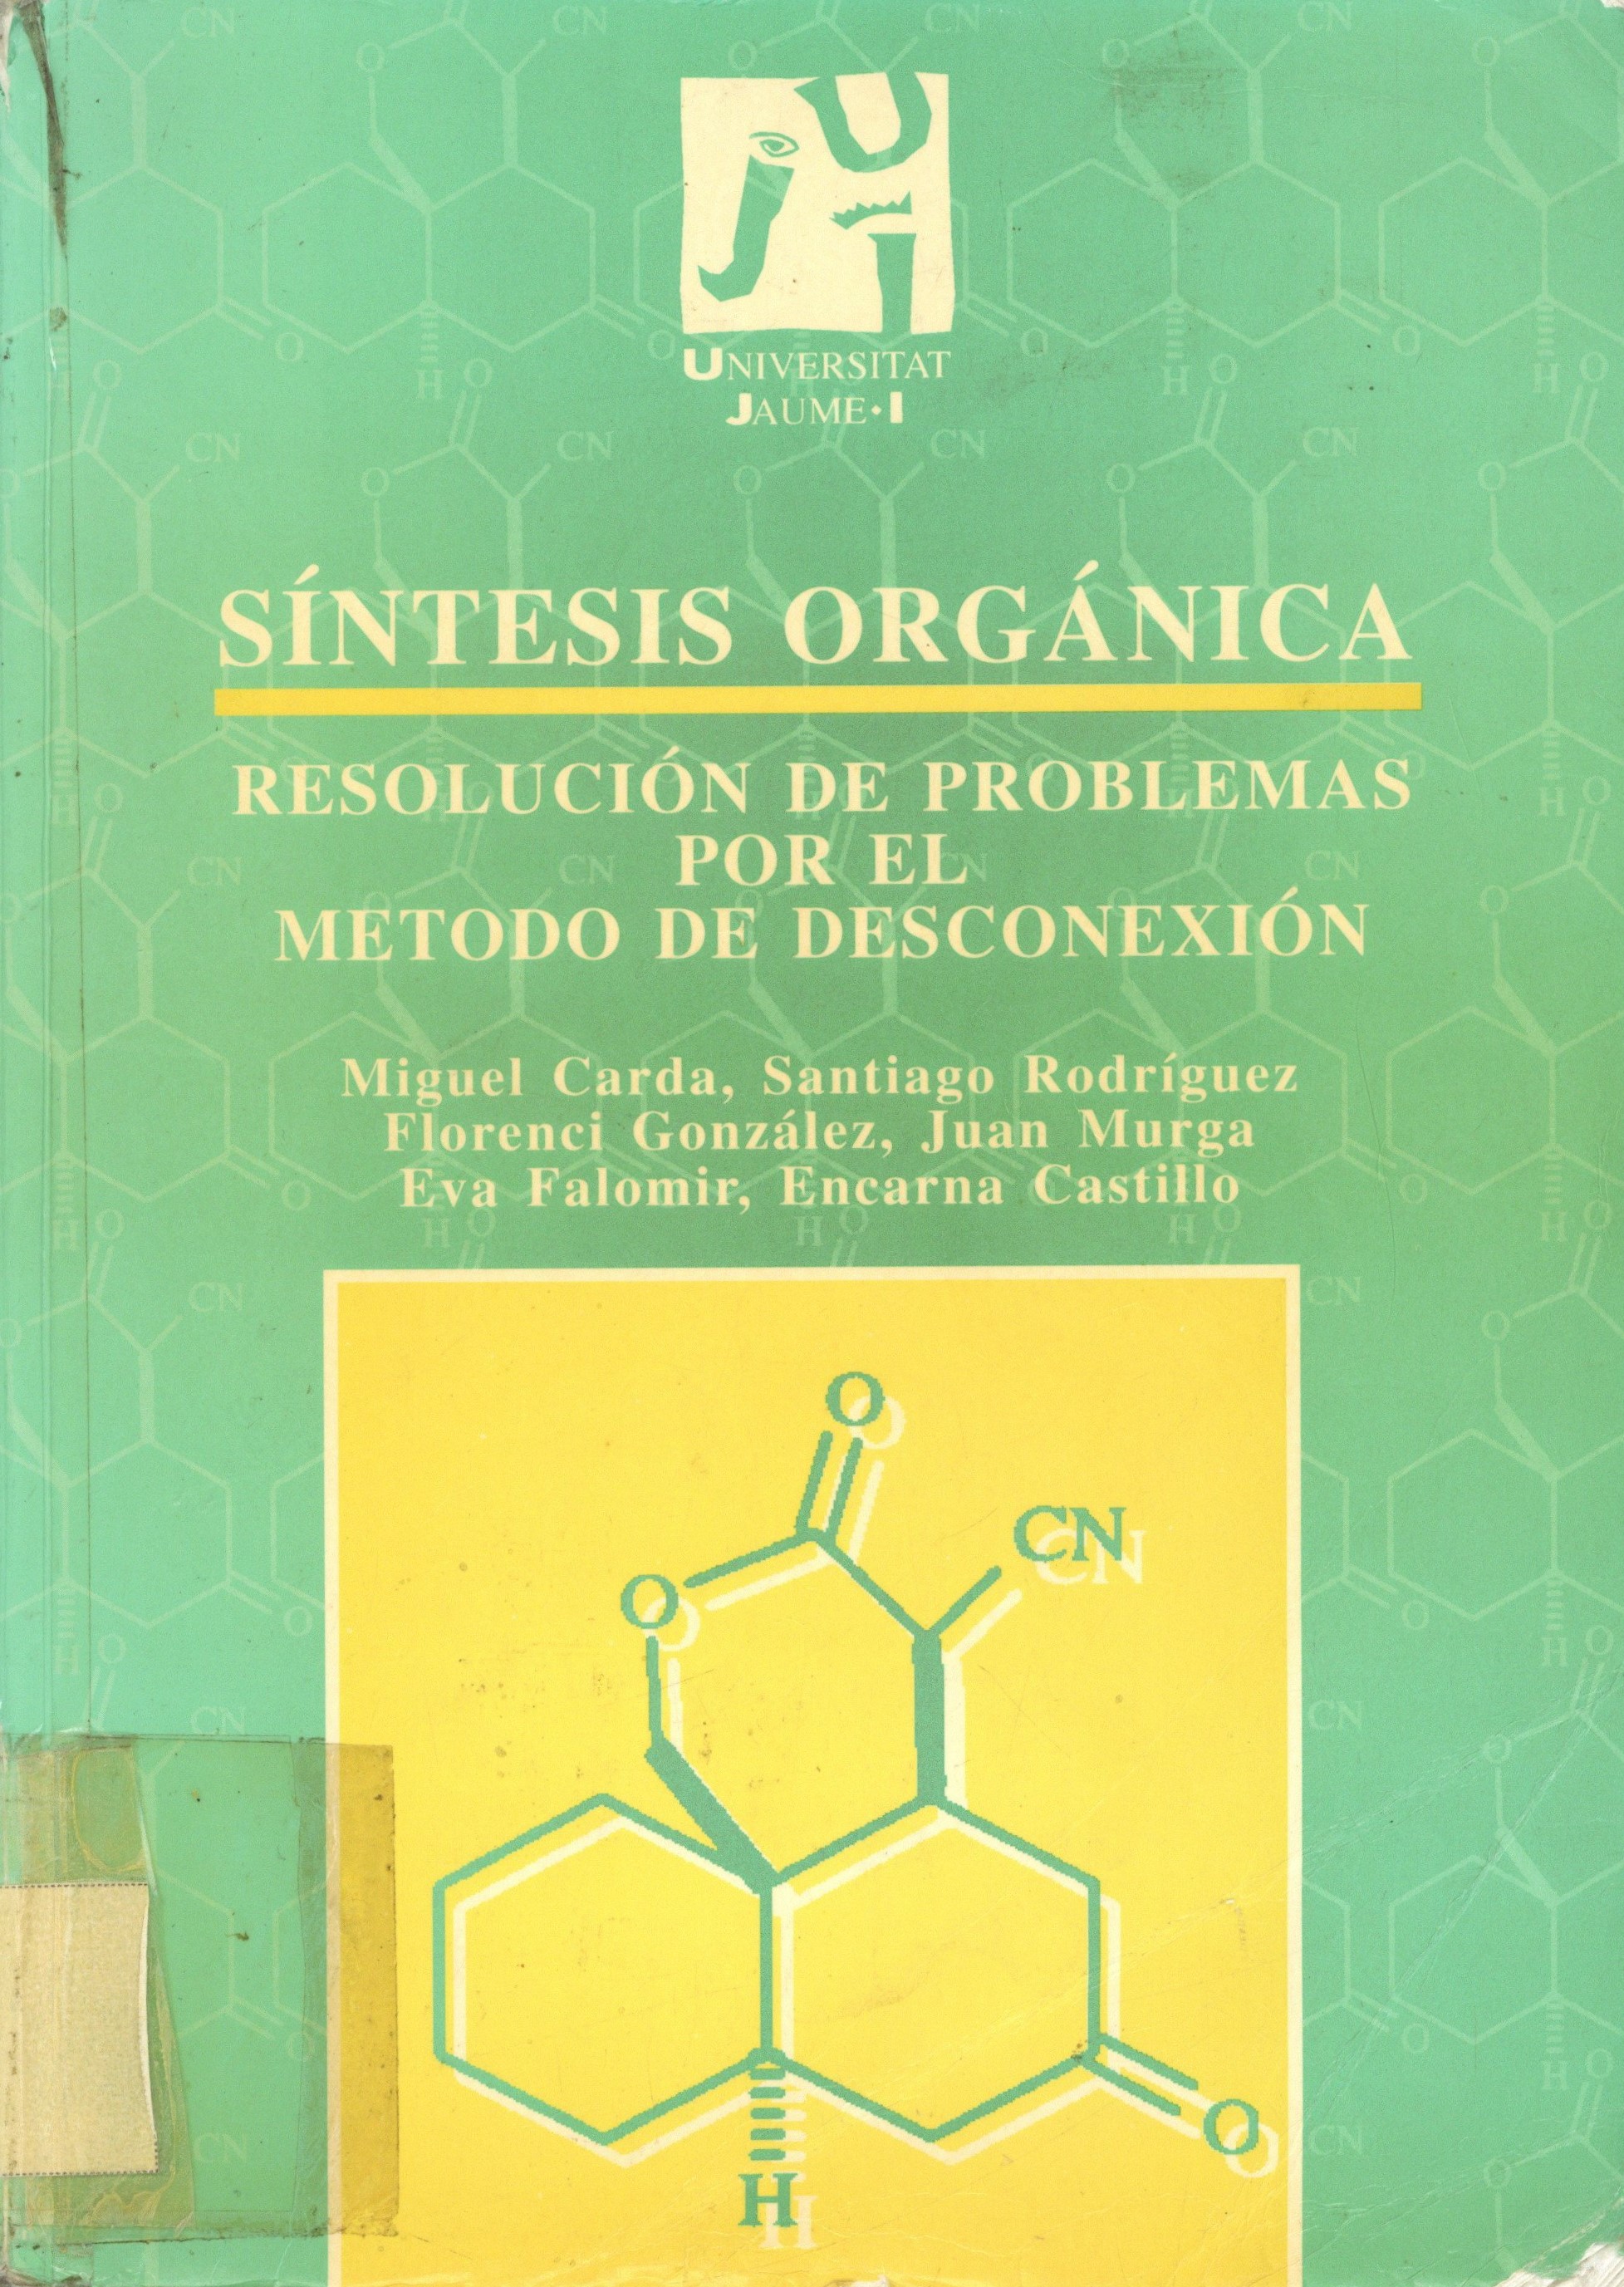 Imagen de portada del libro Síntesis orgánica